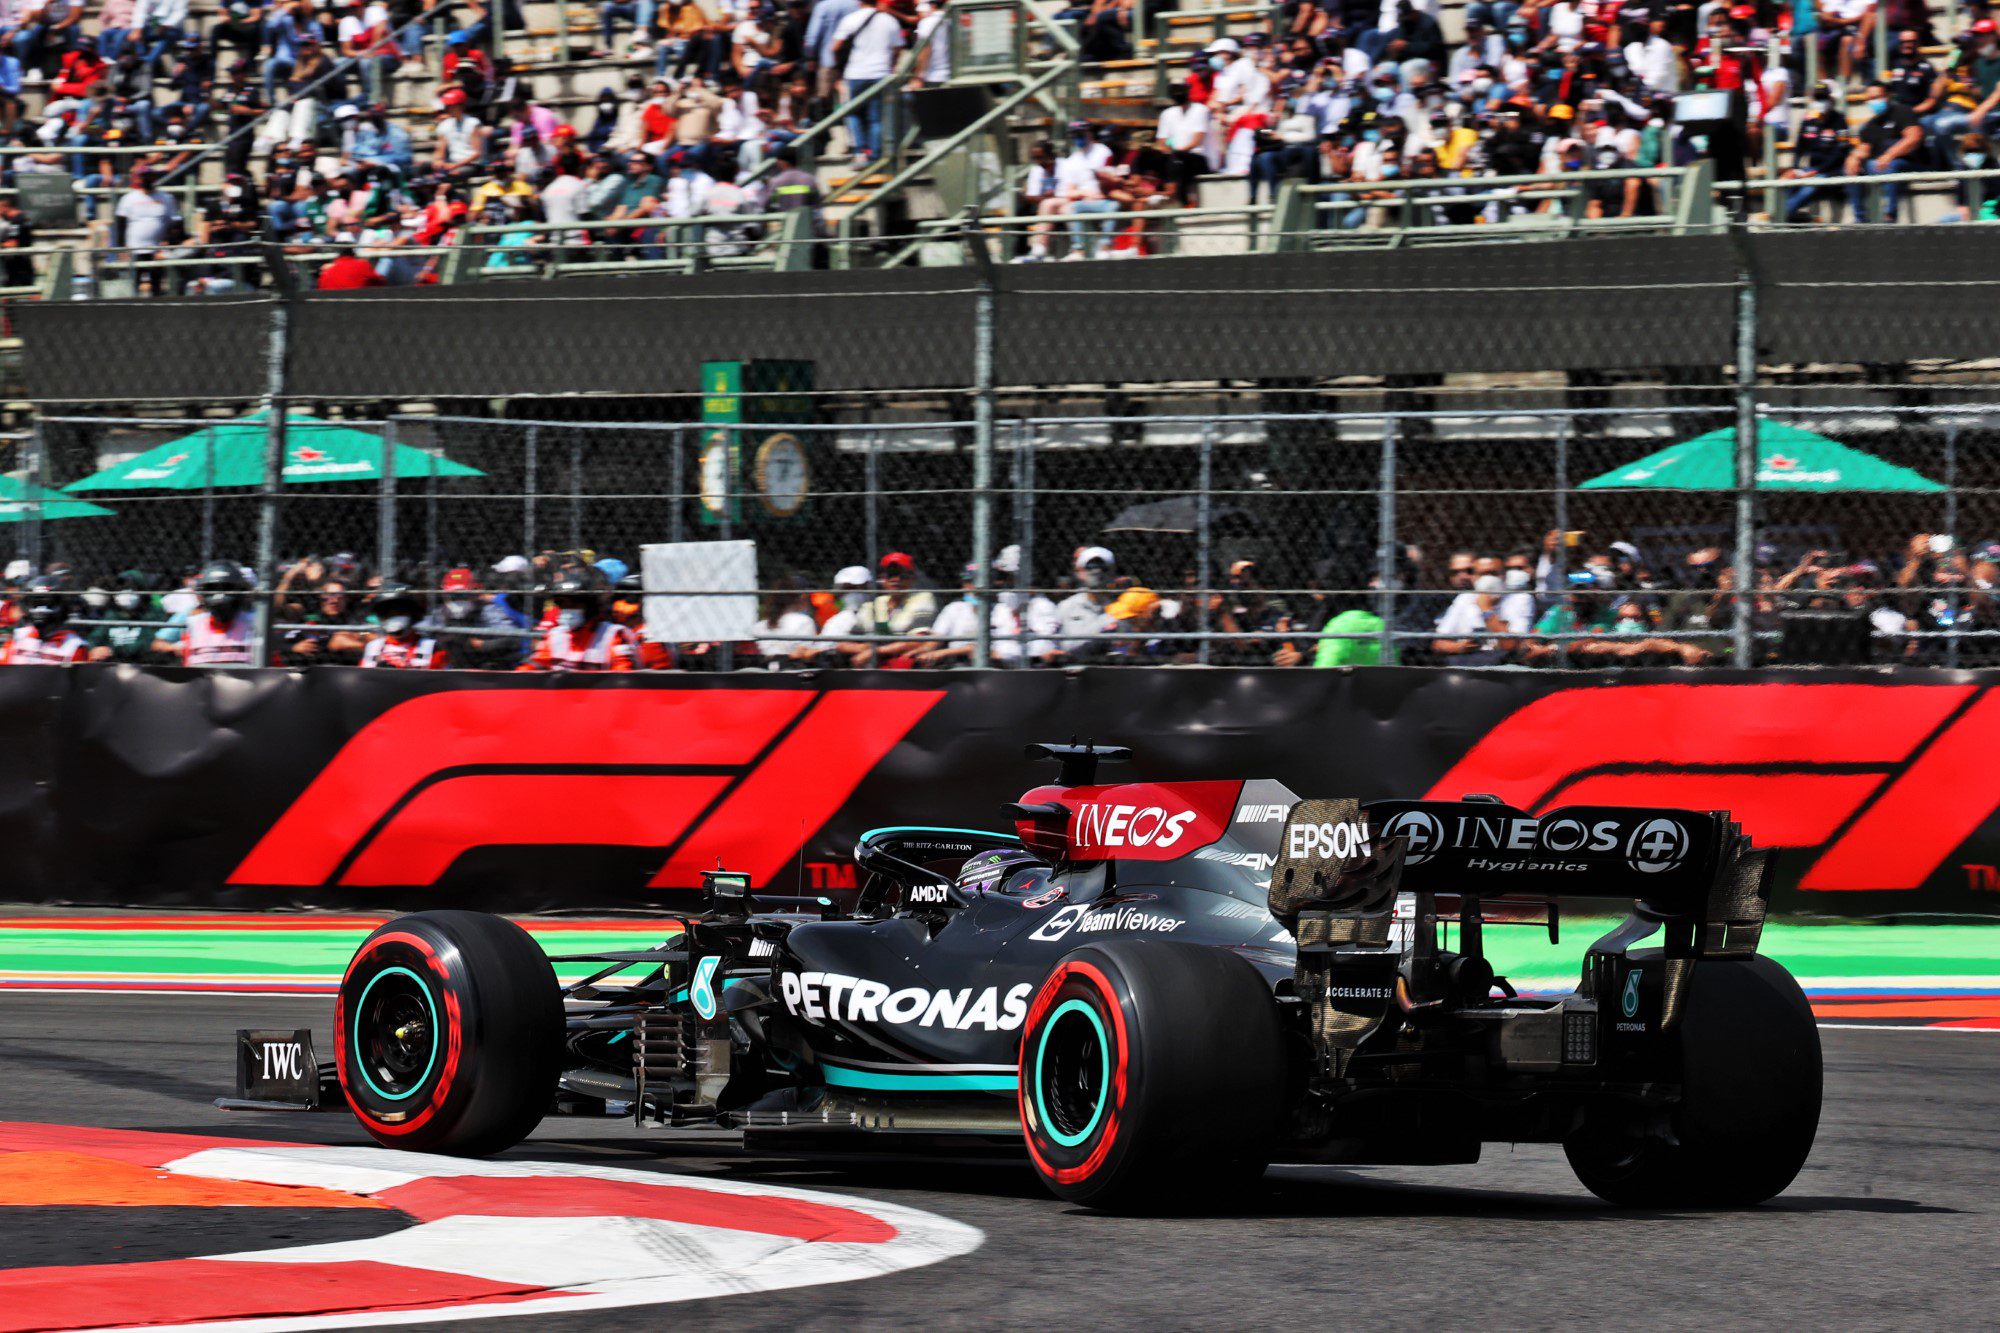 F1 AO VIVO: BRIGA de 'gato e rato' entre Mercedes e Red Bull nos